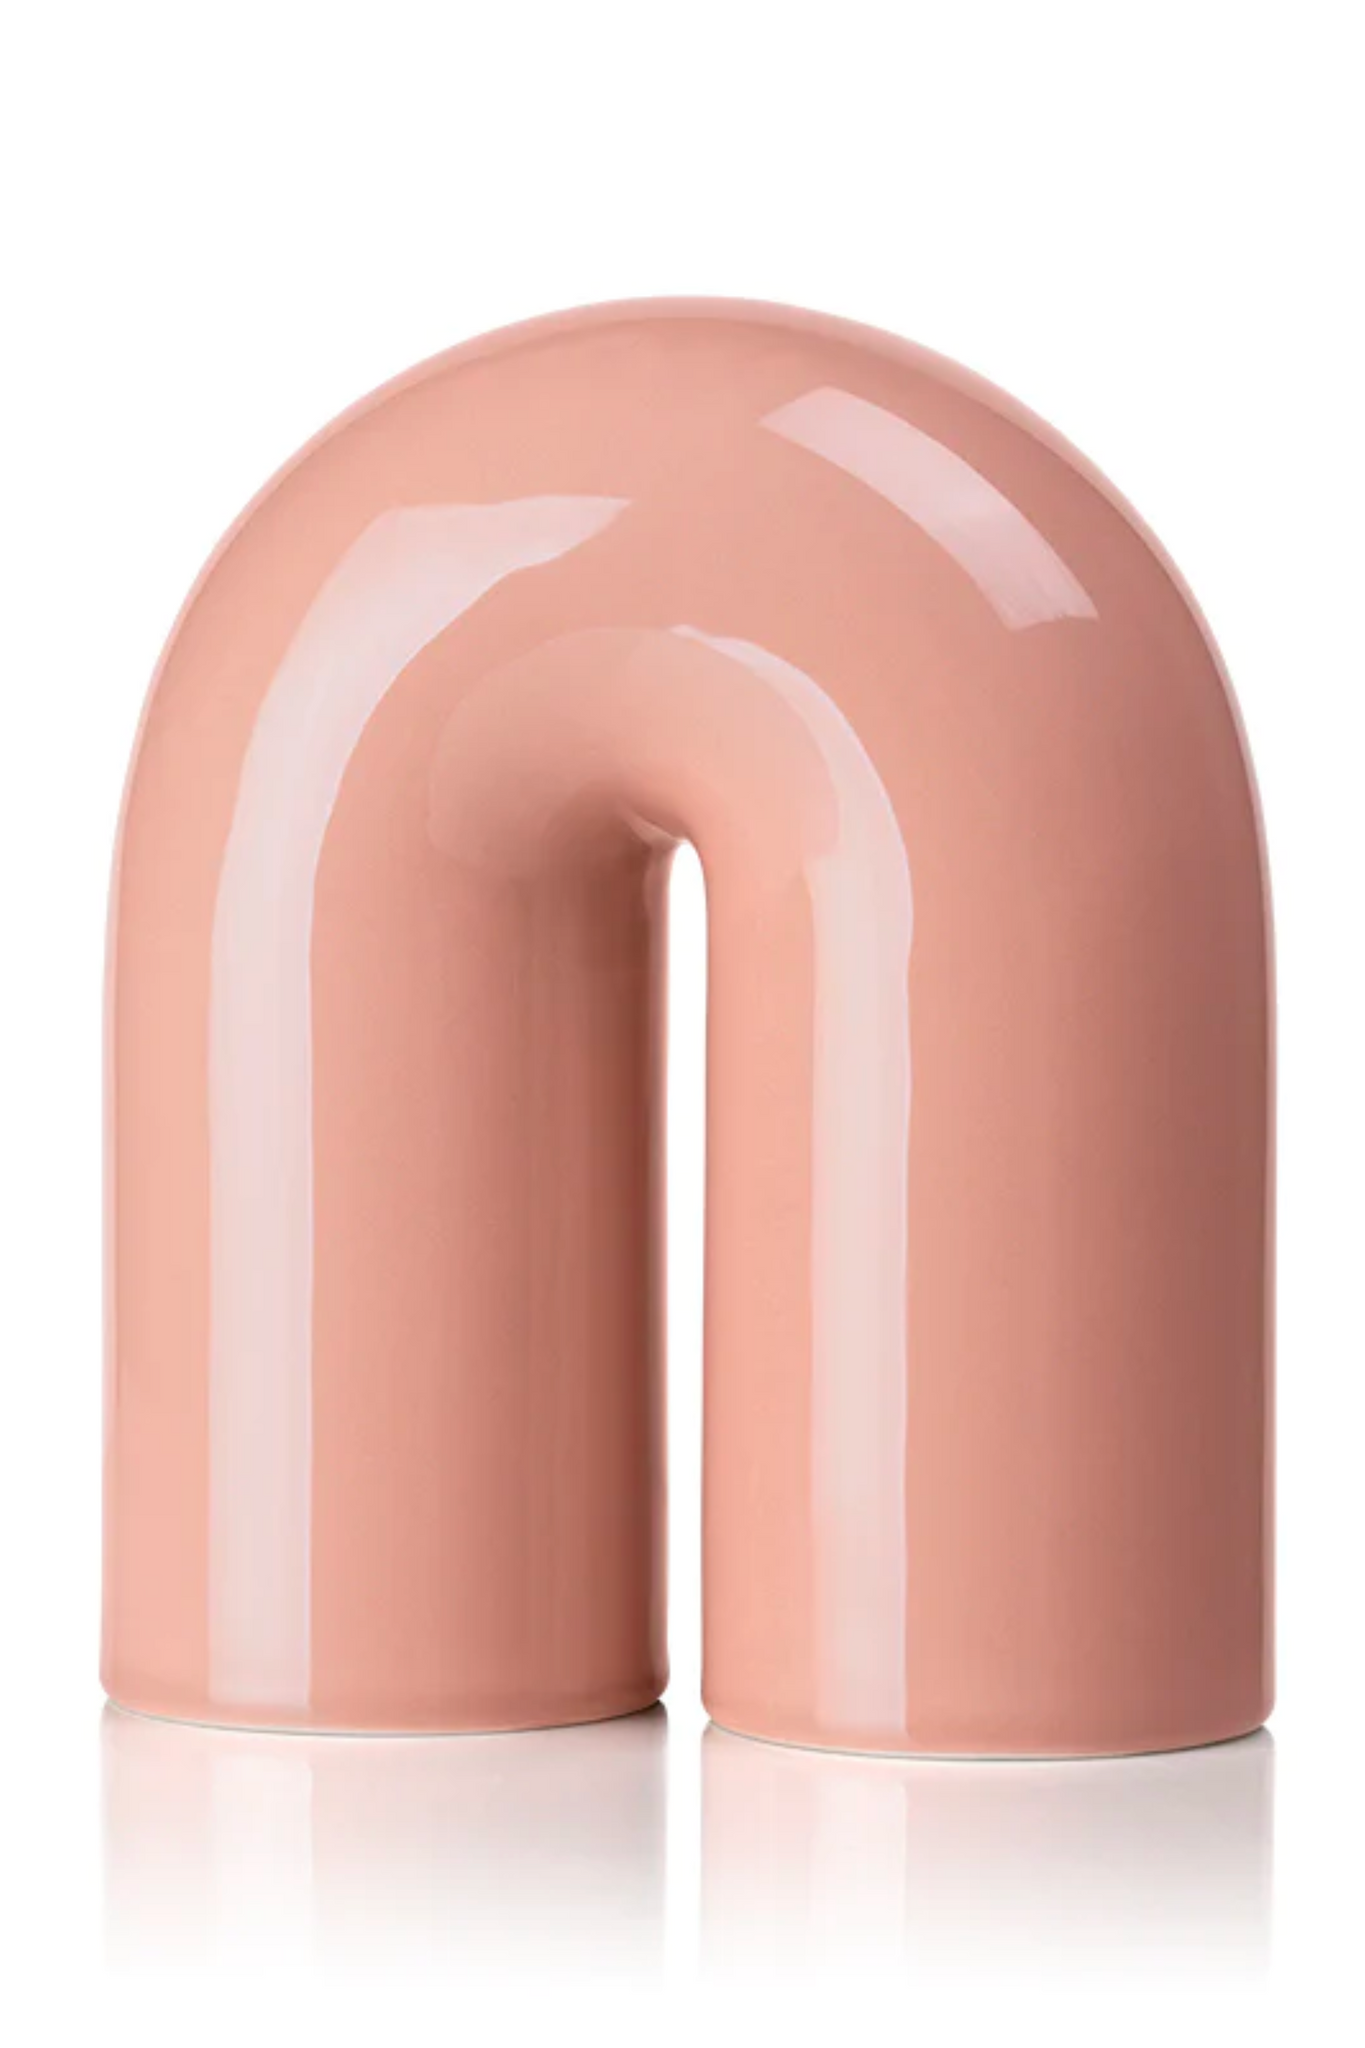 Lucie Kaas Paipa-Ceramic Tube Small Blush Pink